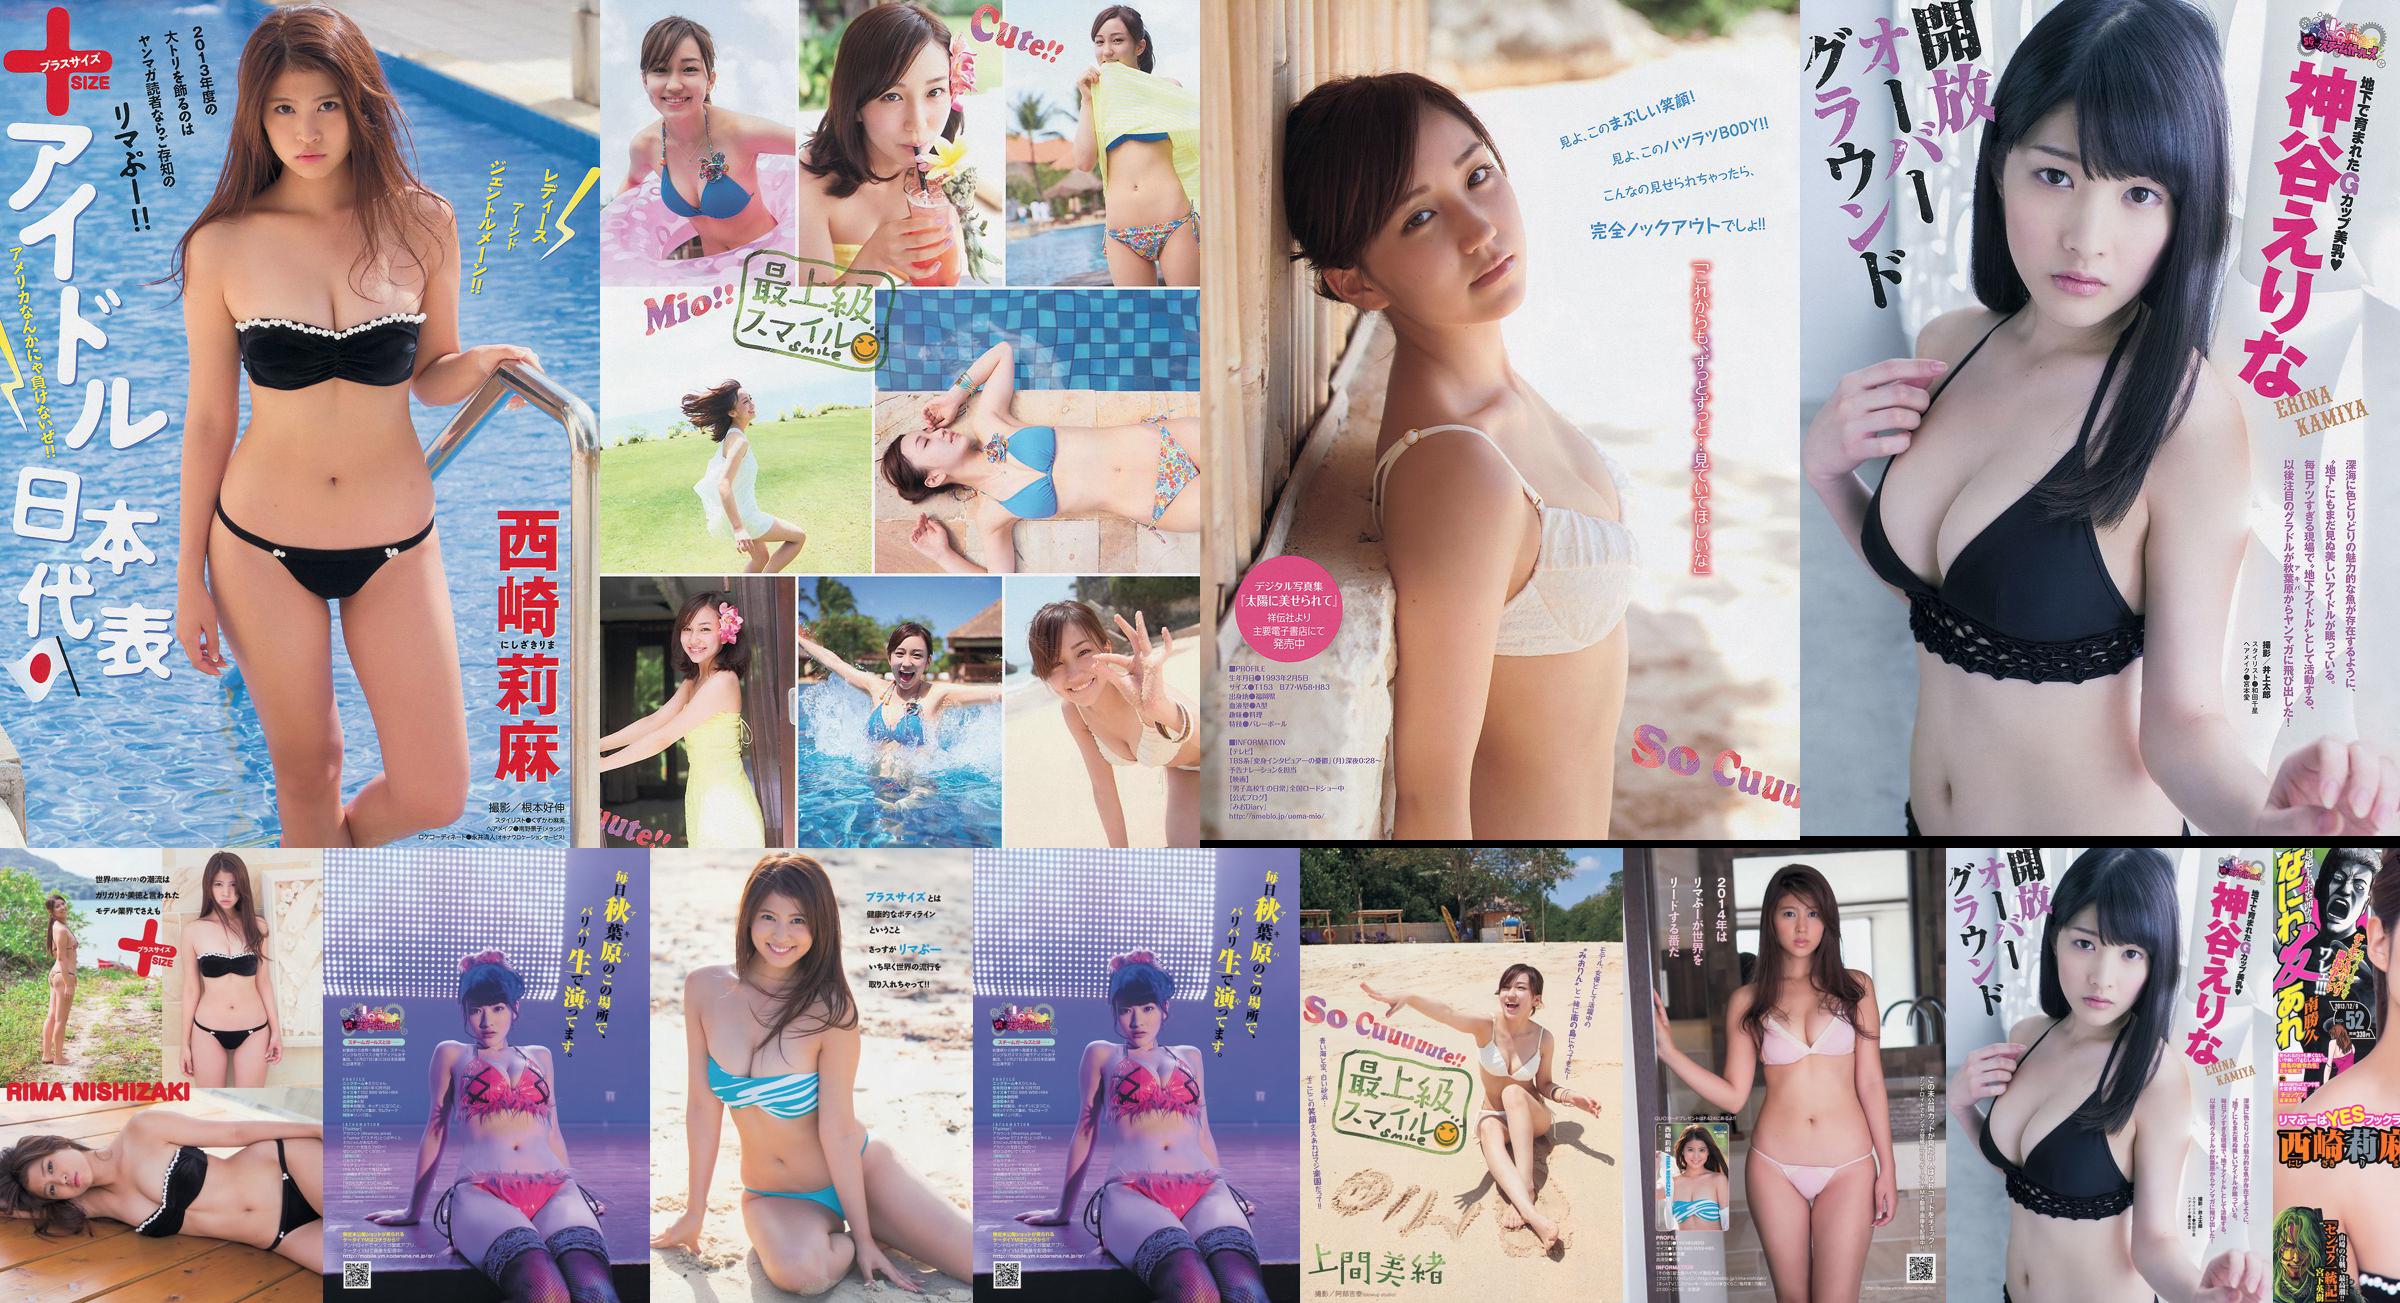 [Young Magazine] Rima Nishizaki Mio Uema Erina Kamiya 2013 No.52 Photo Moshi No.95cca9 Page 4